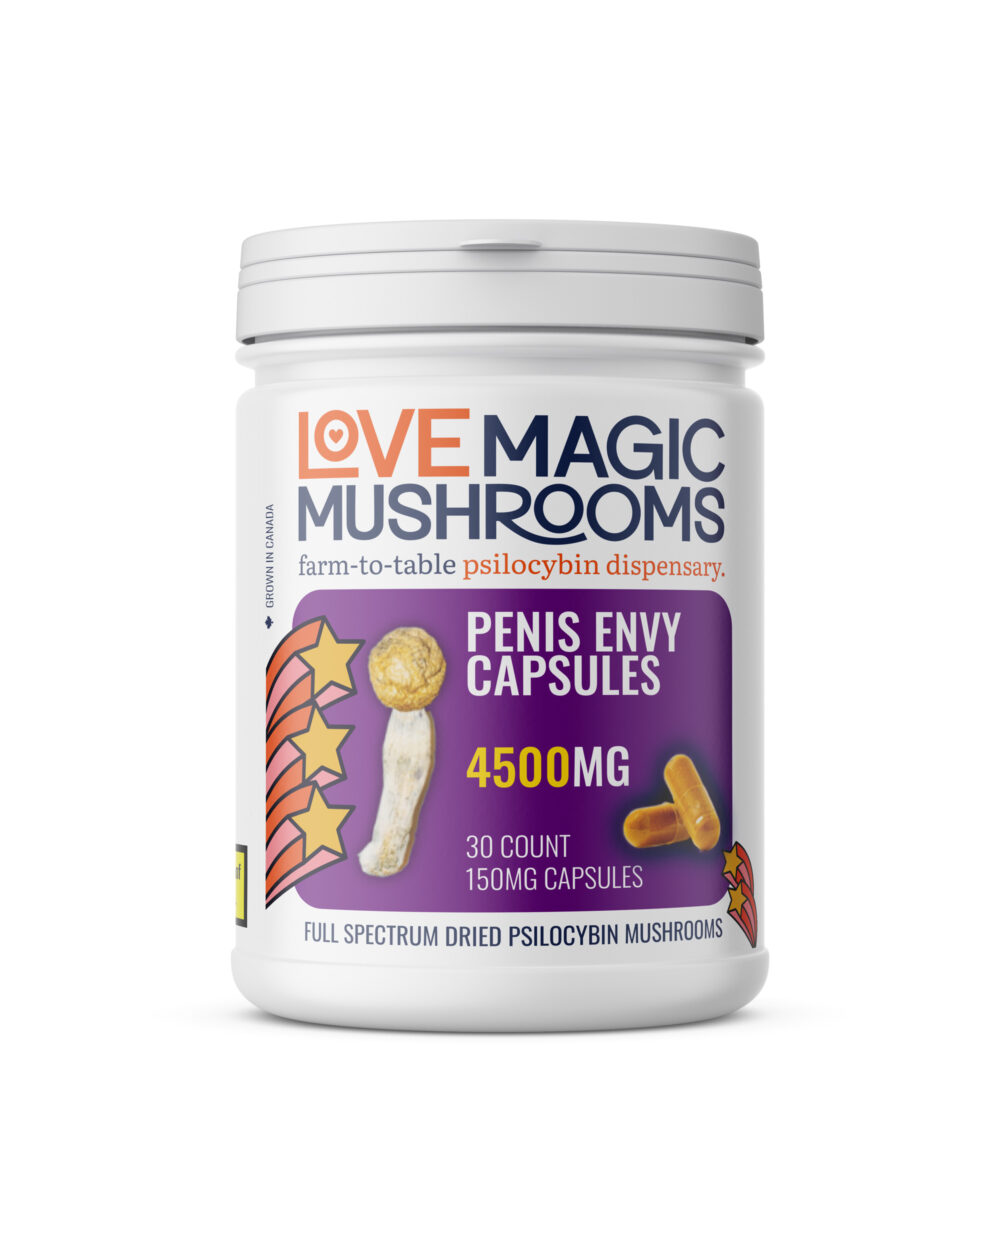 Love Magic Mushrooms Capsules - Penis Envy 4500mg